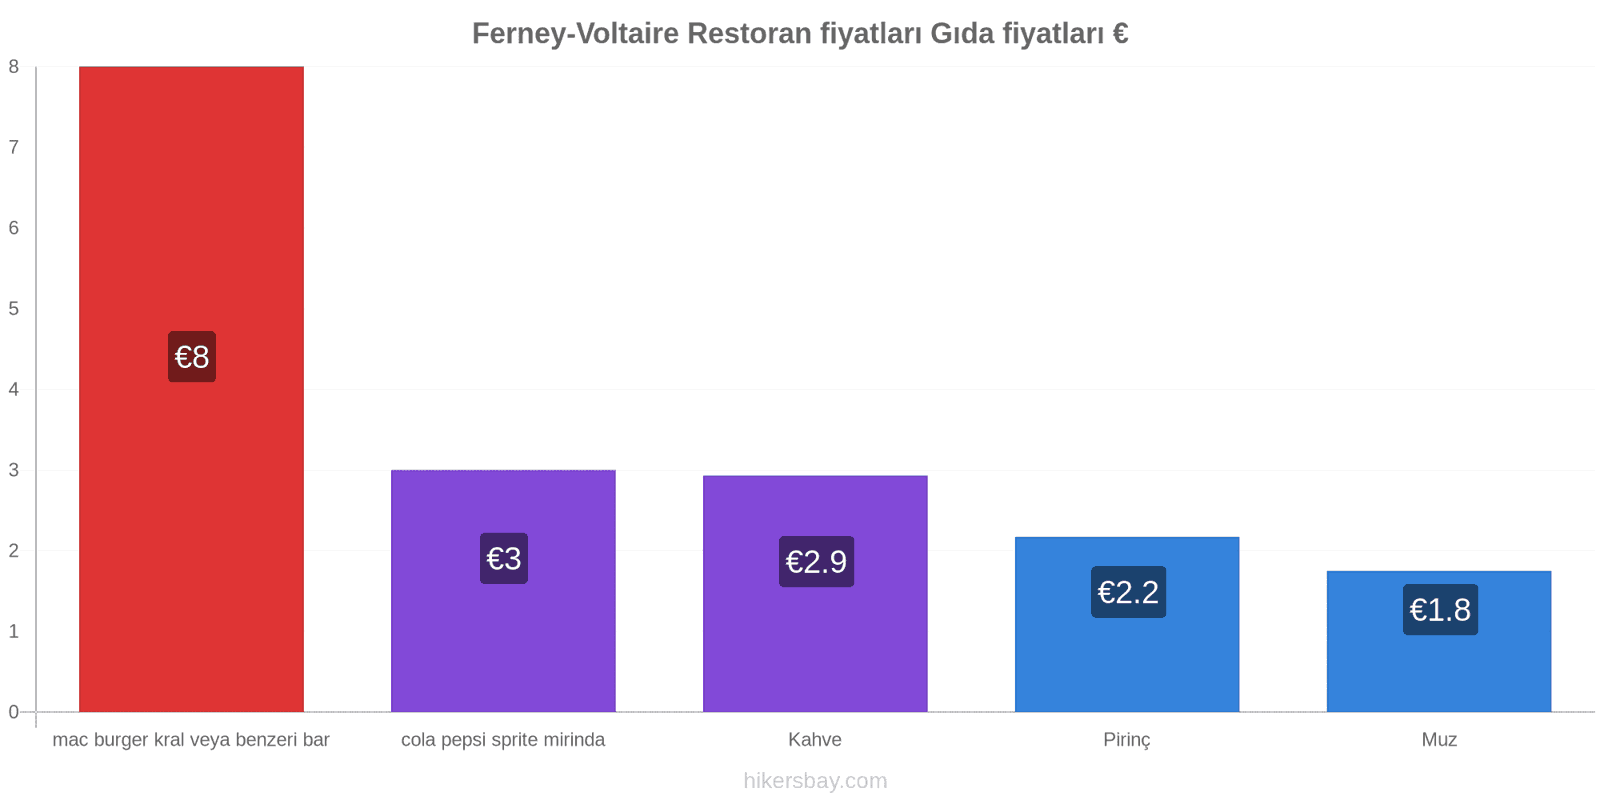 Ferney-Voltaire fiyat değişiklikleri hikersbay.com